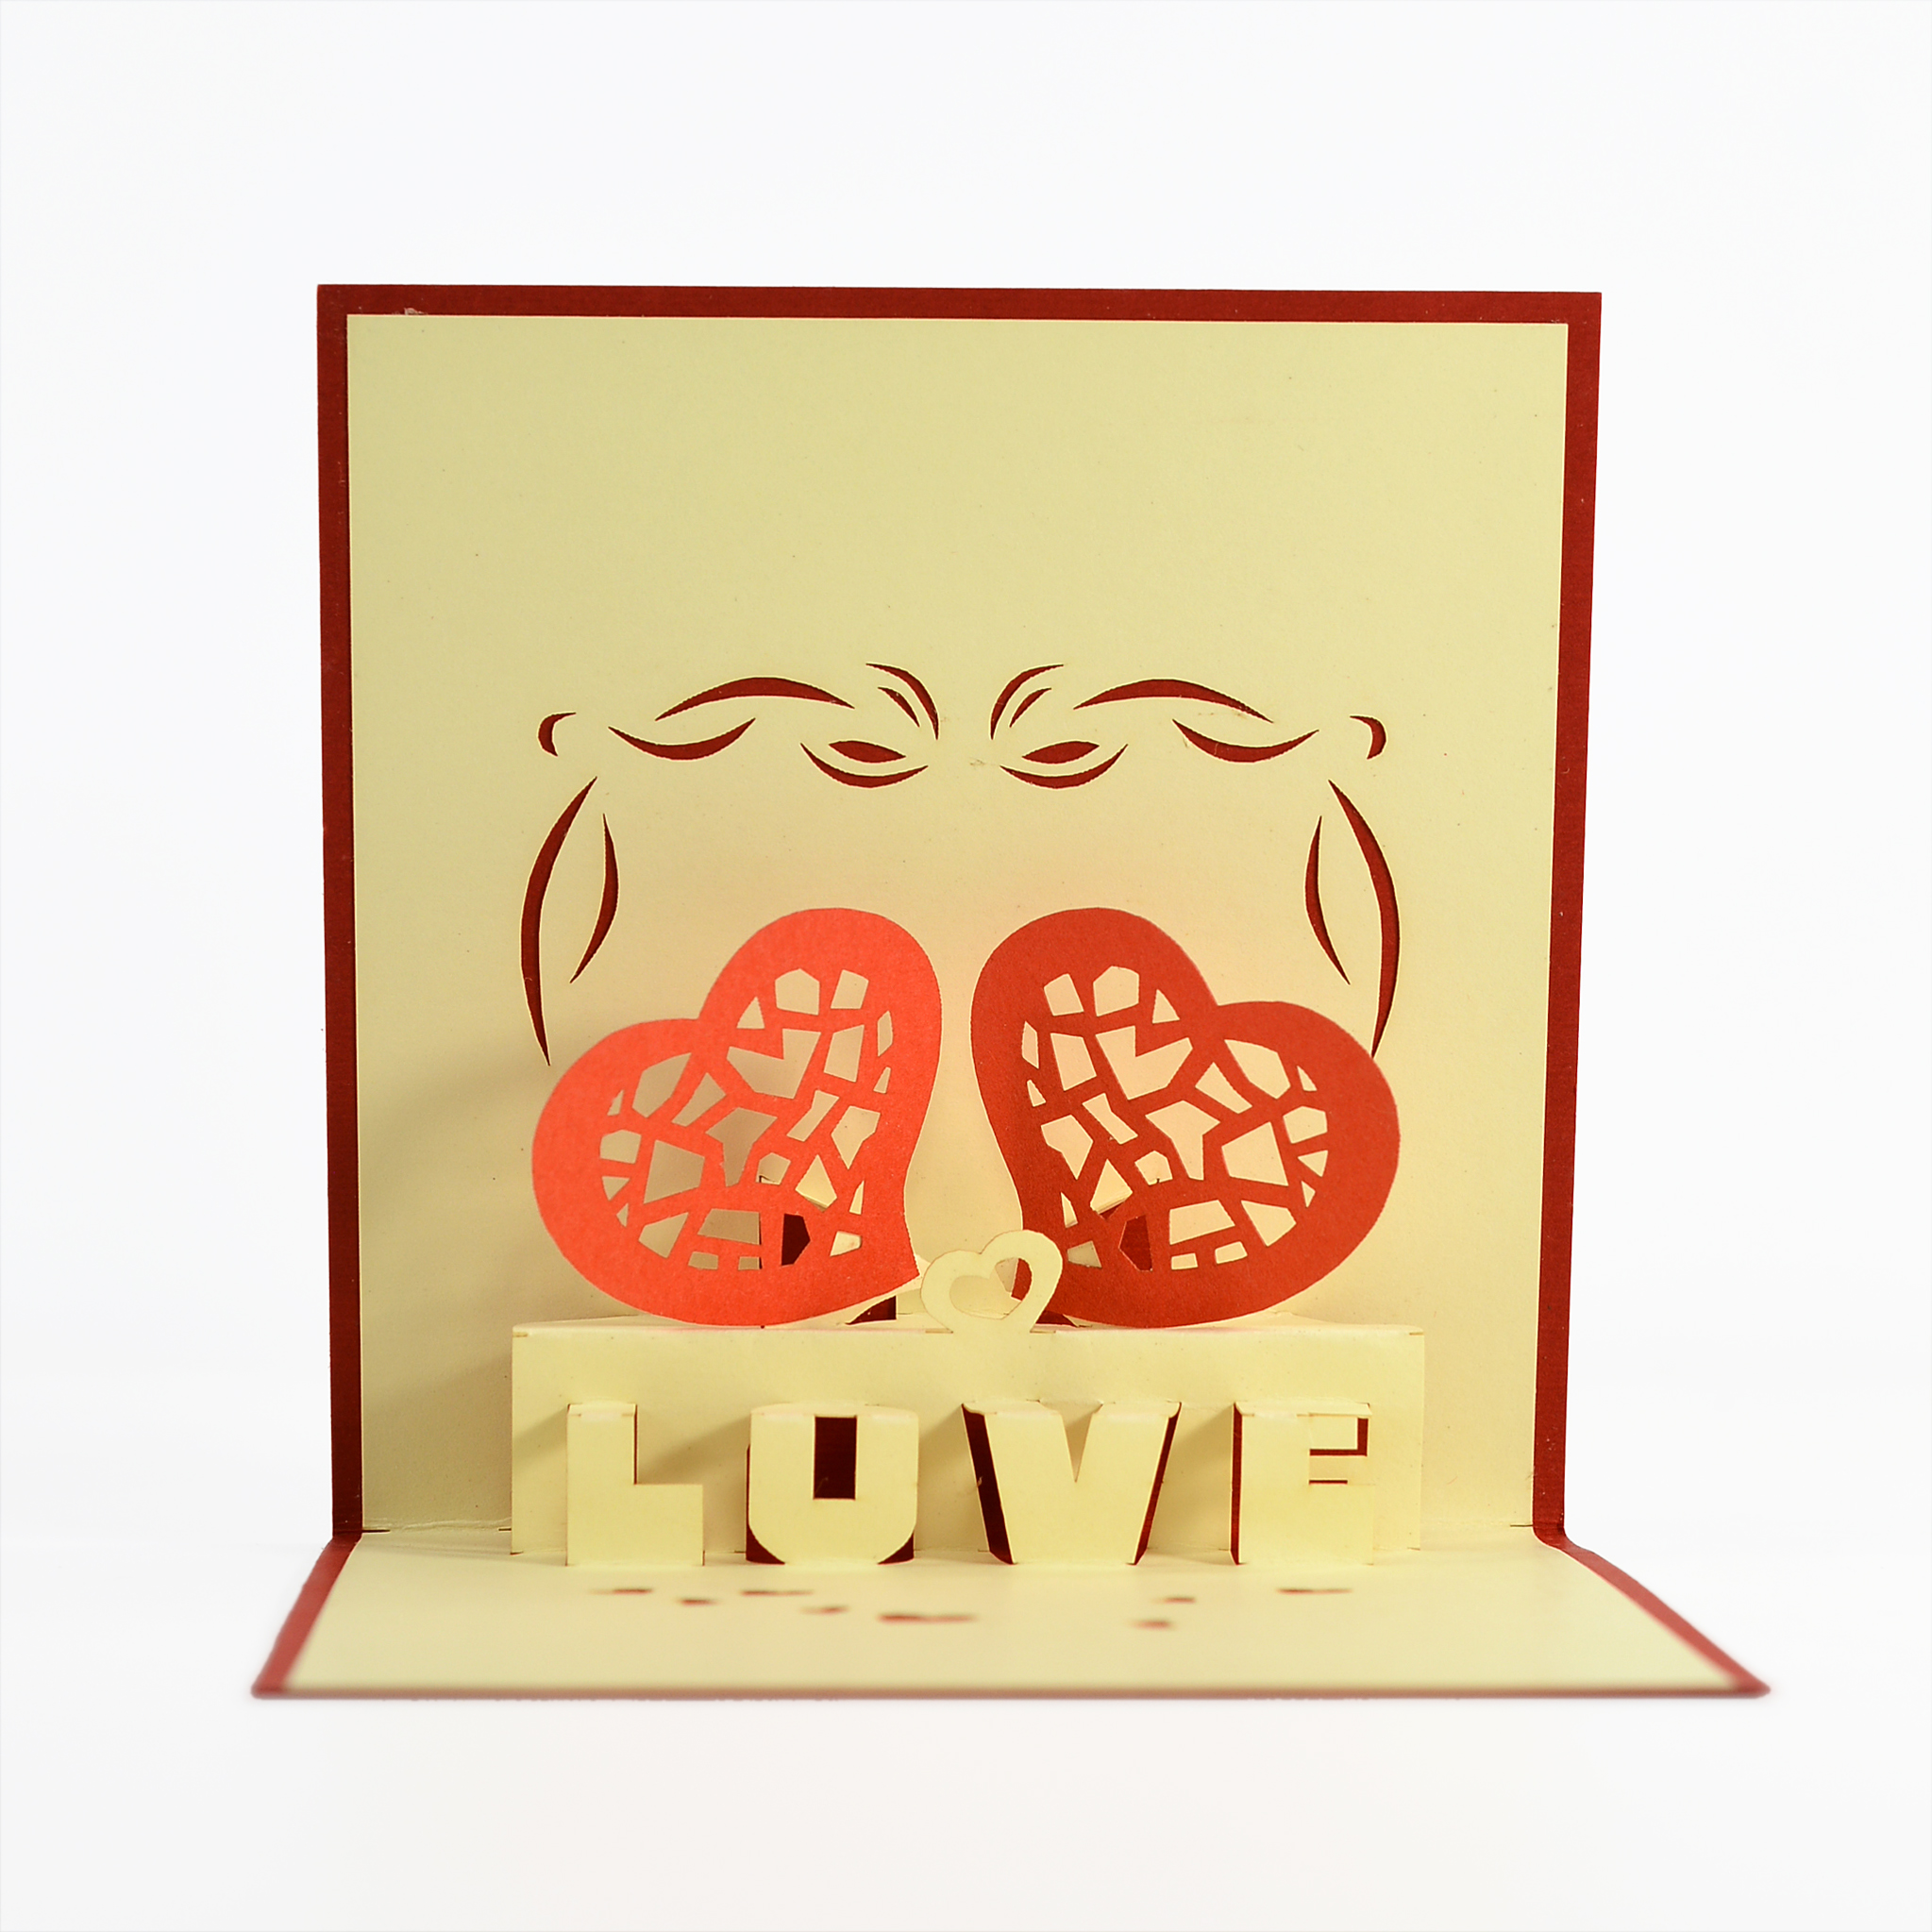 Thiệp nổi 3D Chủ đề về tình yêu, cặp đôi trái tim, Viet Nam Pop-up card Thiệp nổi Việt Nam Size 12x12 cm LO009